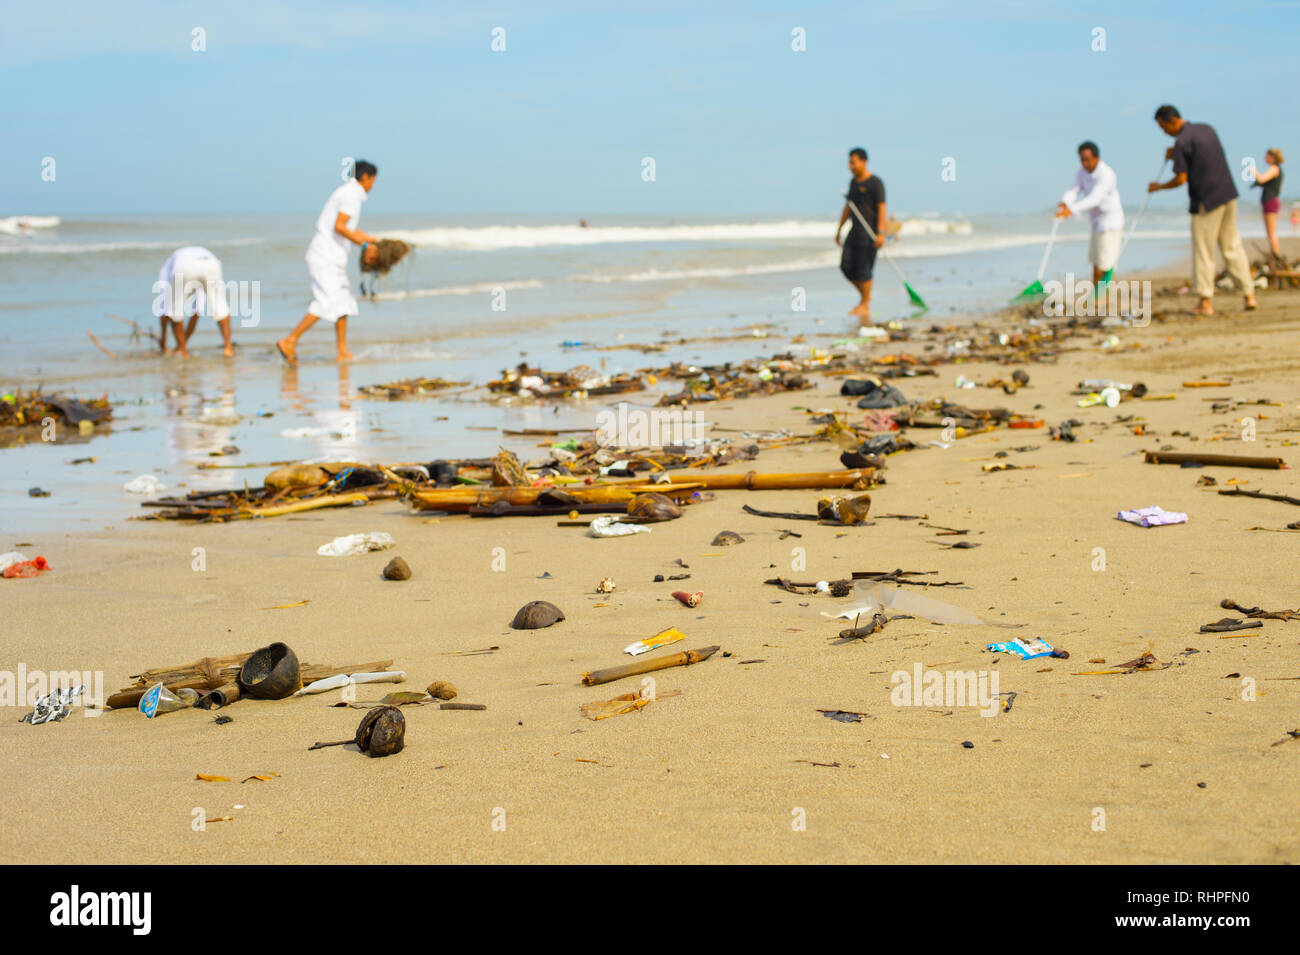 Gruppo di persone la pulizia spiaggia dalla spazzatura e rifiuti in plastica. Bali, Indonesia Foto Stock